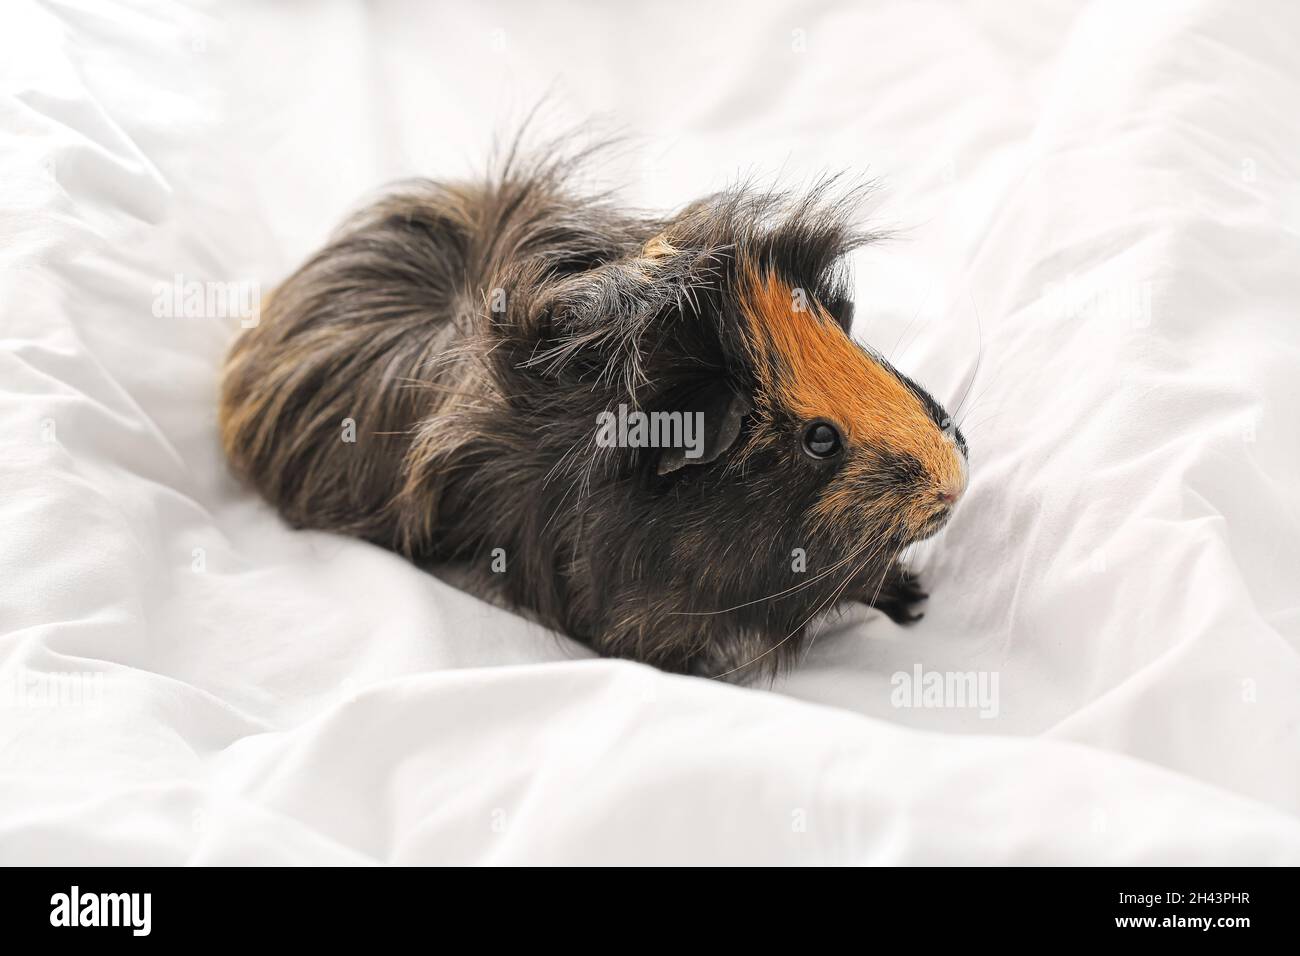 Niedliches Meerschweinchen auf weißer Bettwäsche im Bett Stockfotografie -  Alamy